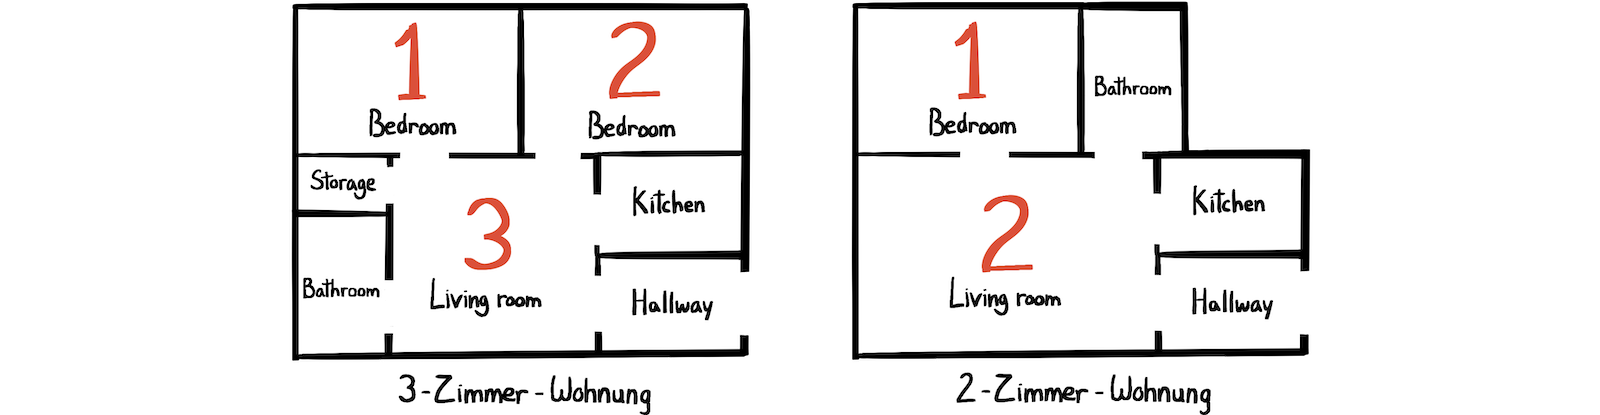 Apartment floor plan berlin